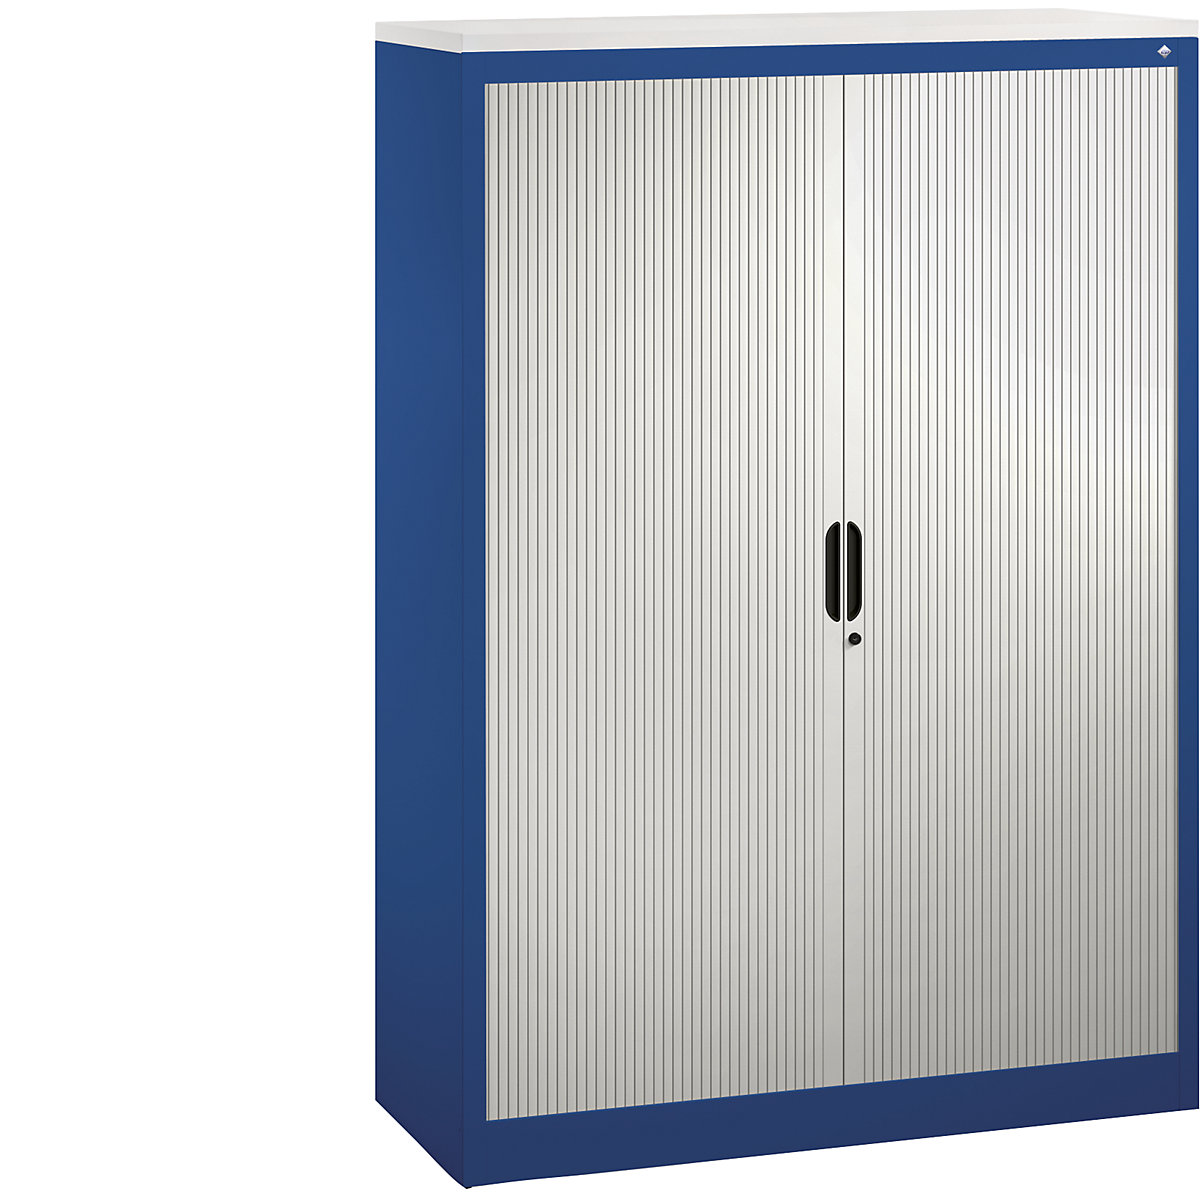 Roller shutter cupboard with horizontal shutter – C+P, HxWxD 1660 x 1200 x 420 mm, 3 shelves, 4 file heights, gentian blue / light grey-3